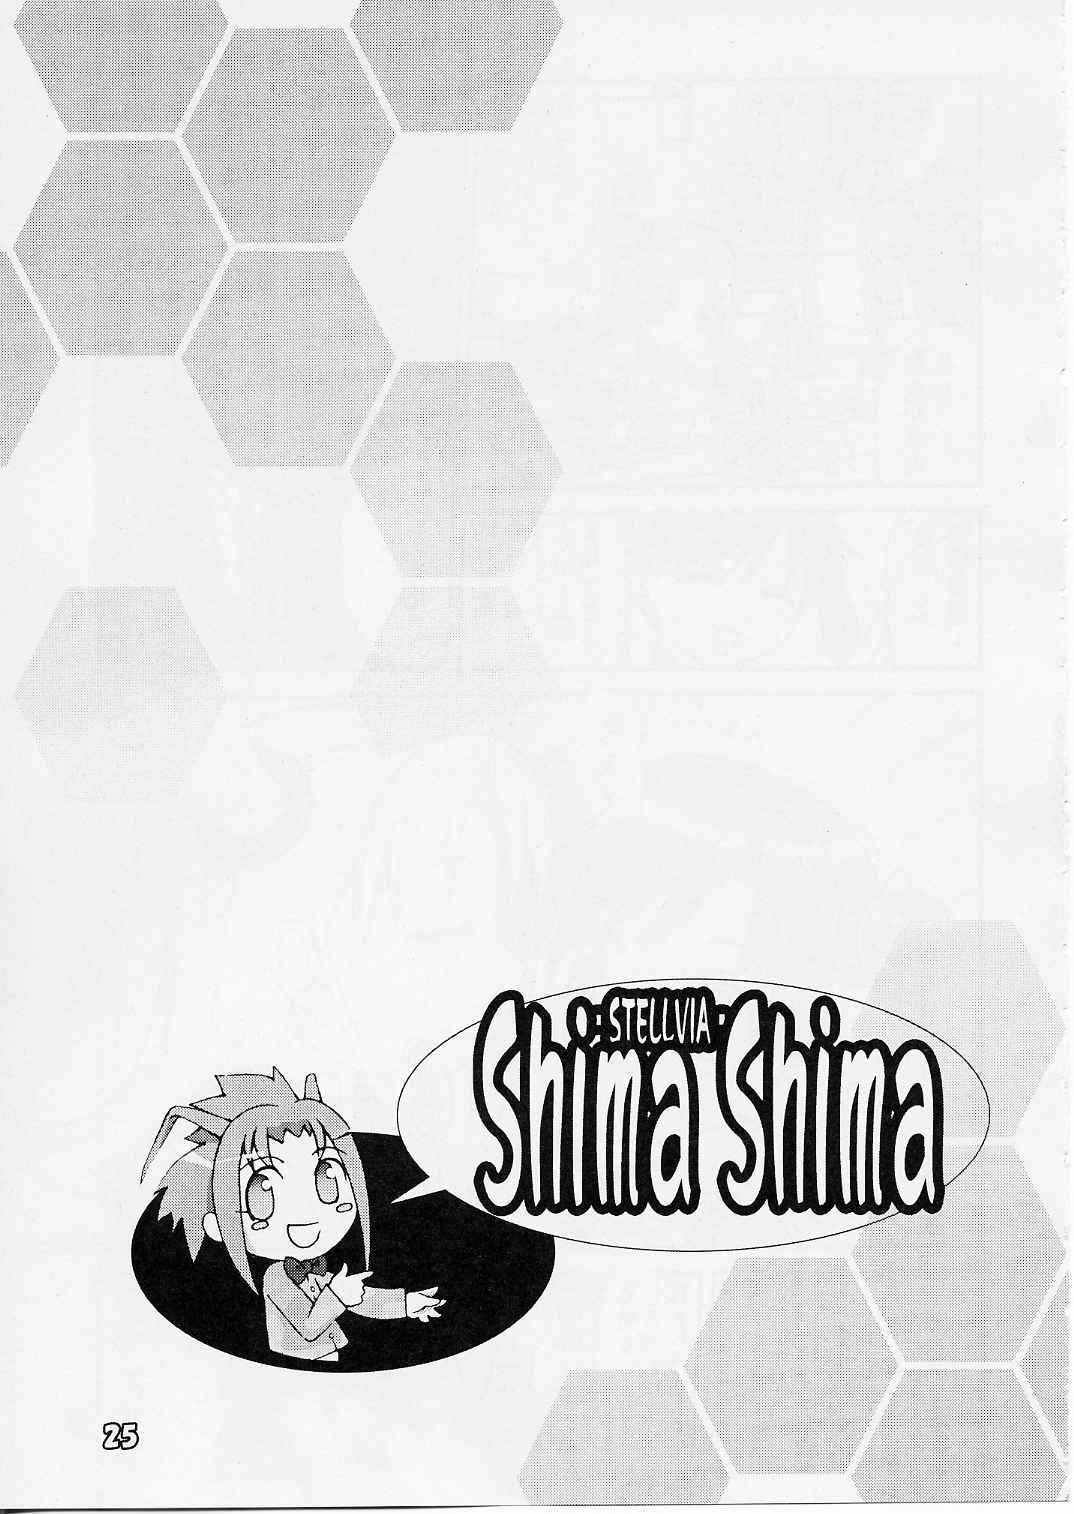 [ぱ～ぷ～ (LEE / 山崎みつる) Shima Shima (宇宙のステルヴィア)